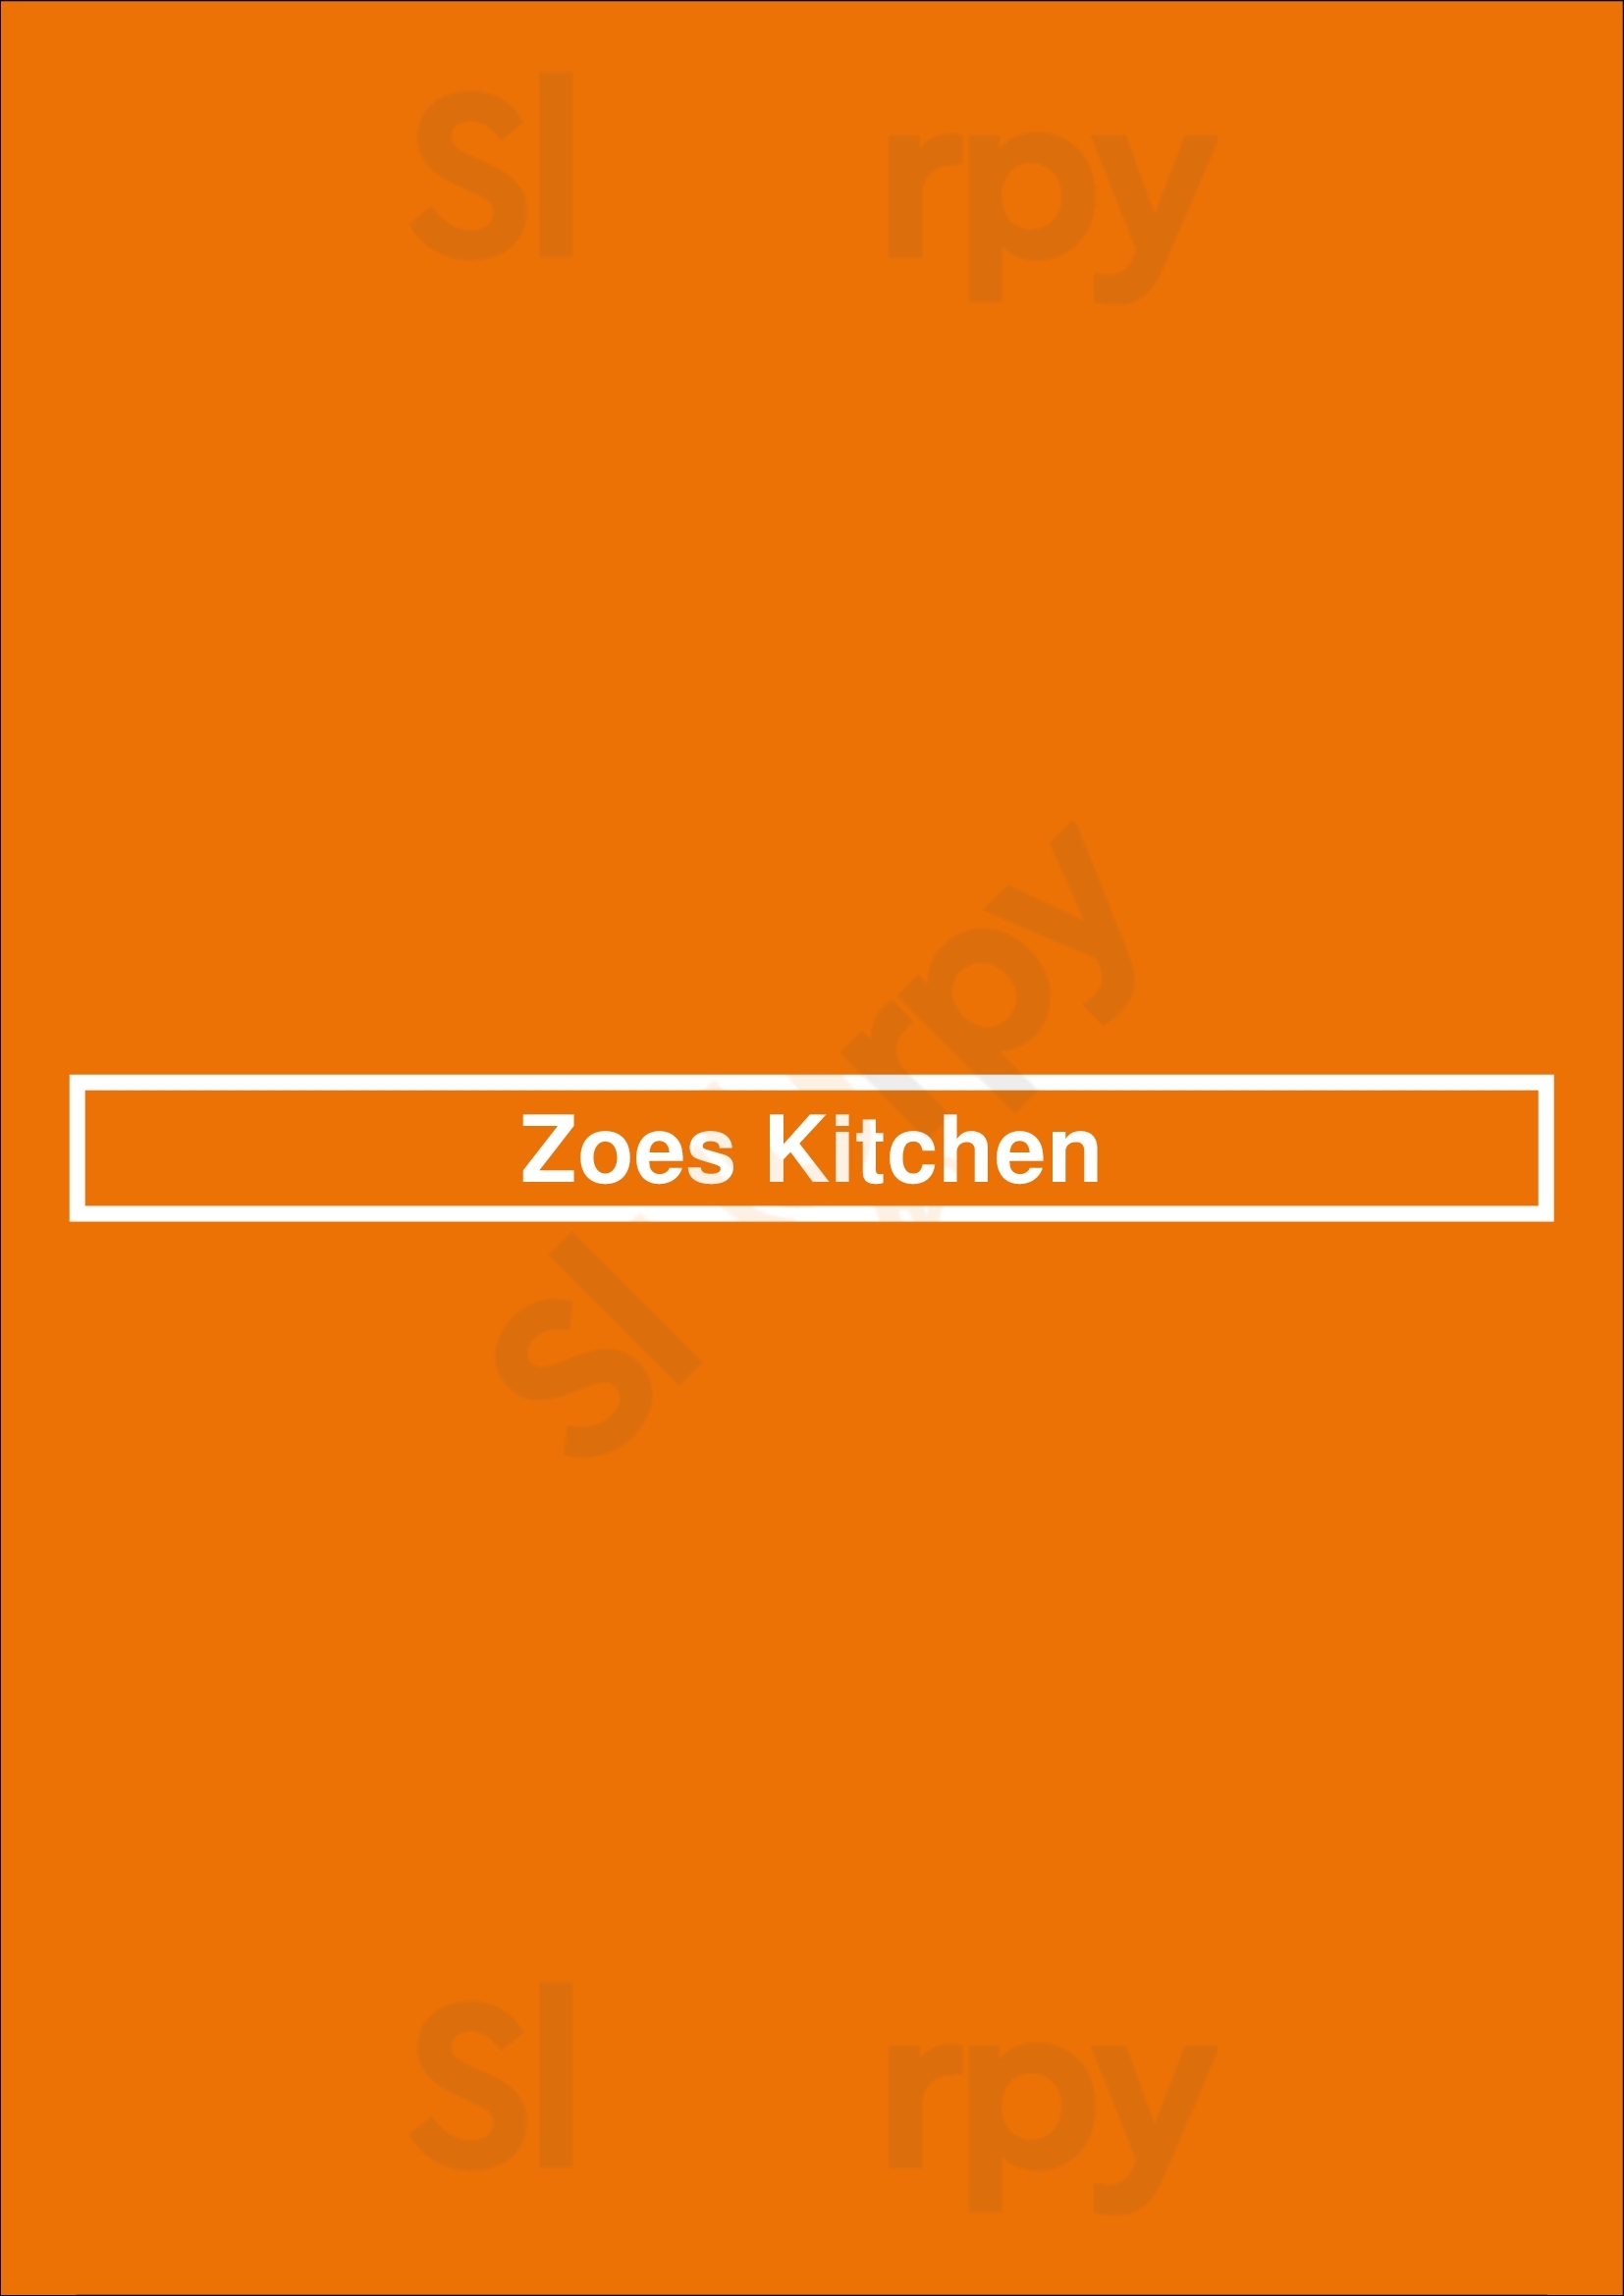 Zoes Kitchen Cumming Menu - 1